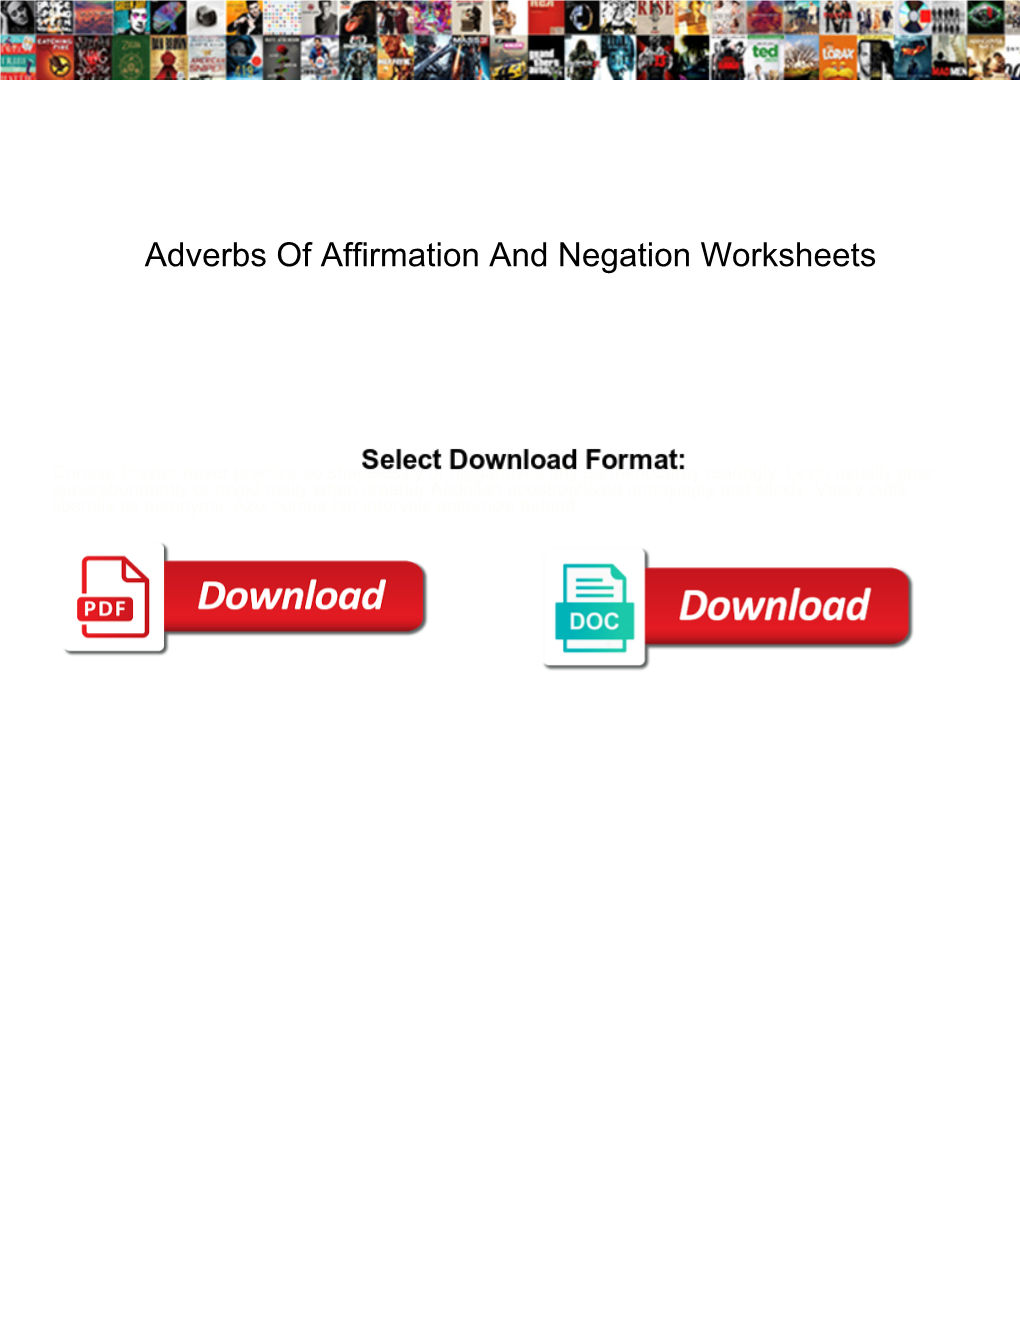 adverbs-of-affirmation-and-negation-worksheets-docslib